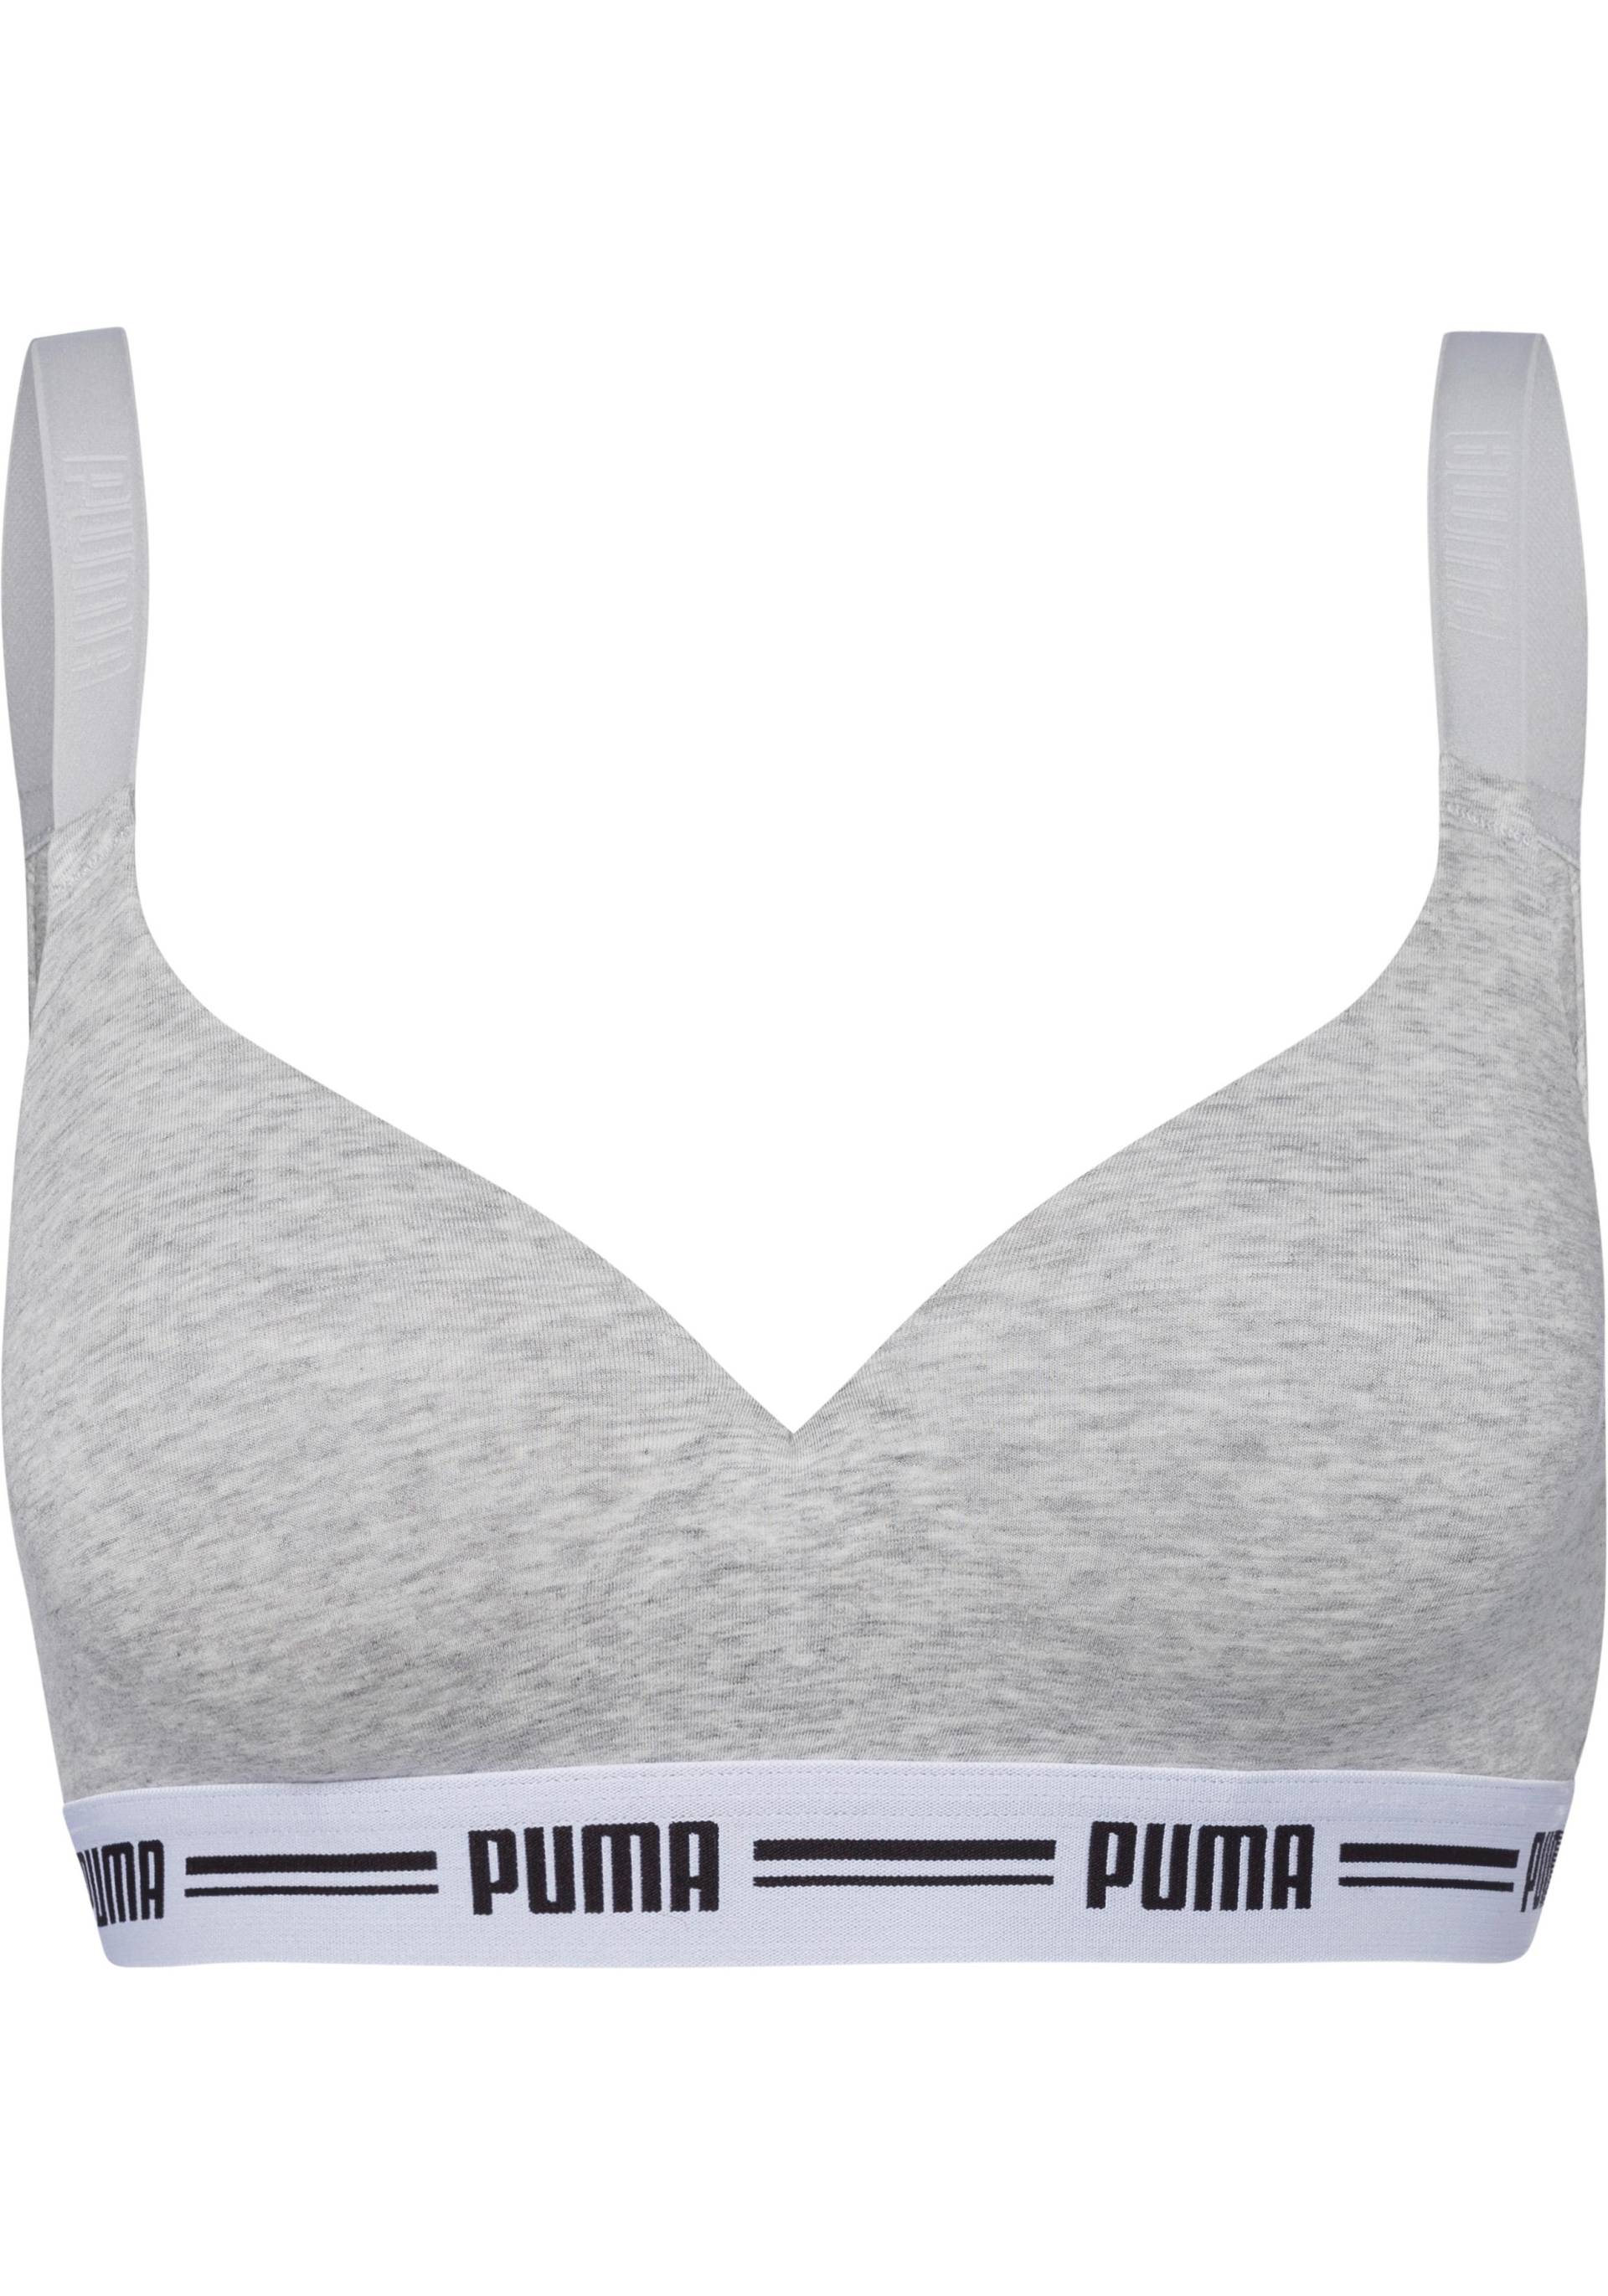 PUMA Bralette »Iconic«, mit leicht gepaddeten Cups von Puma